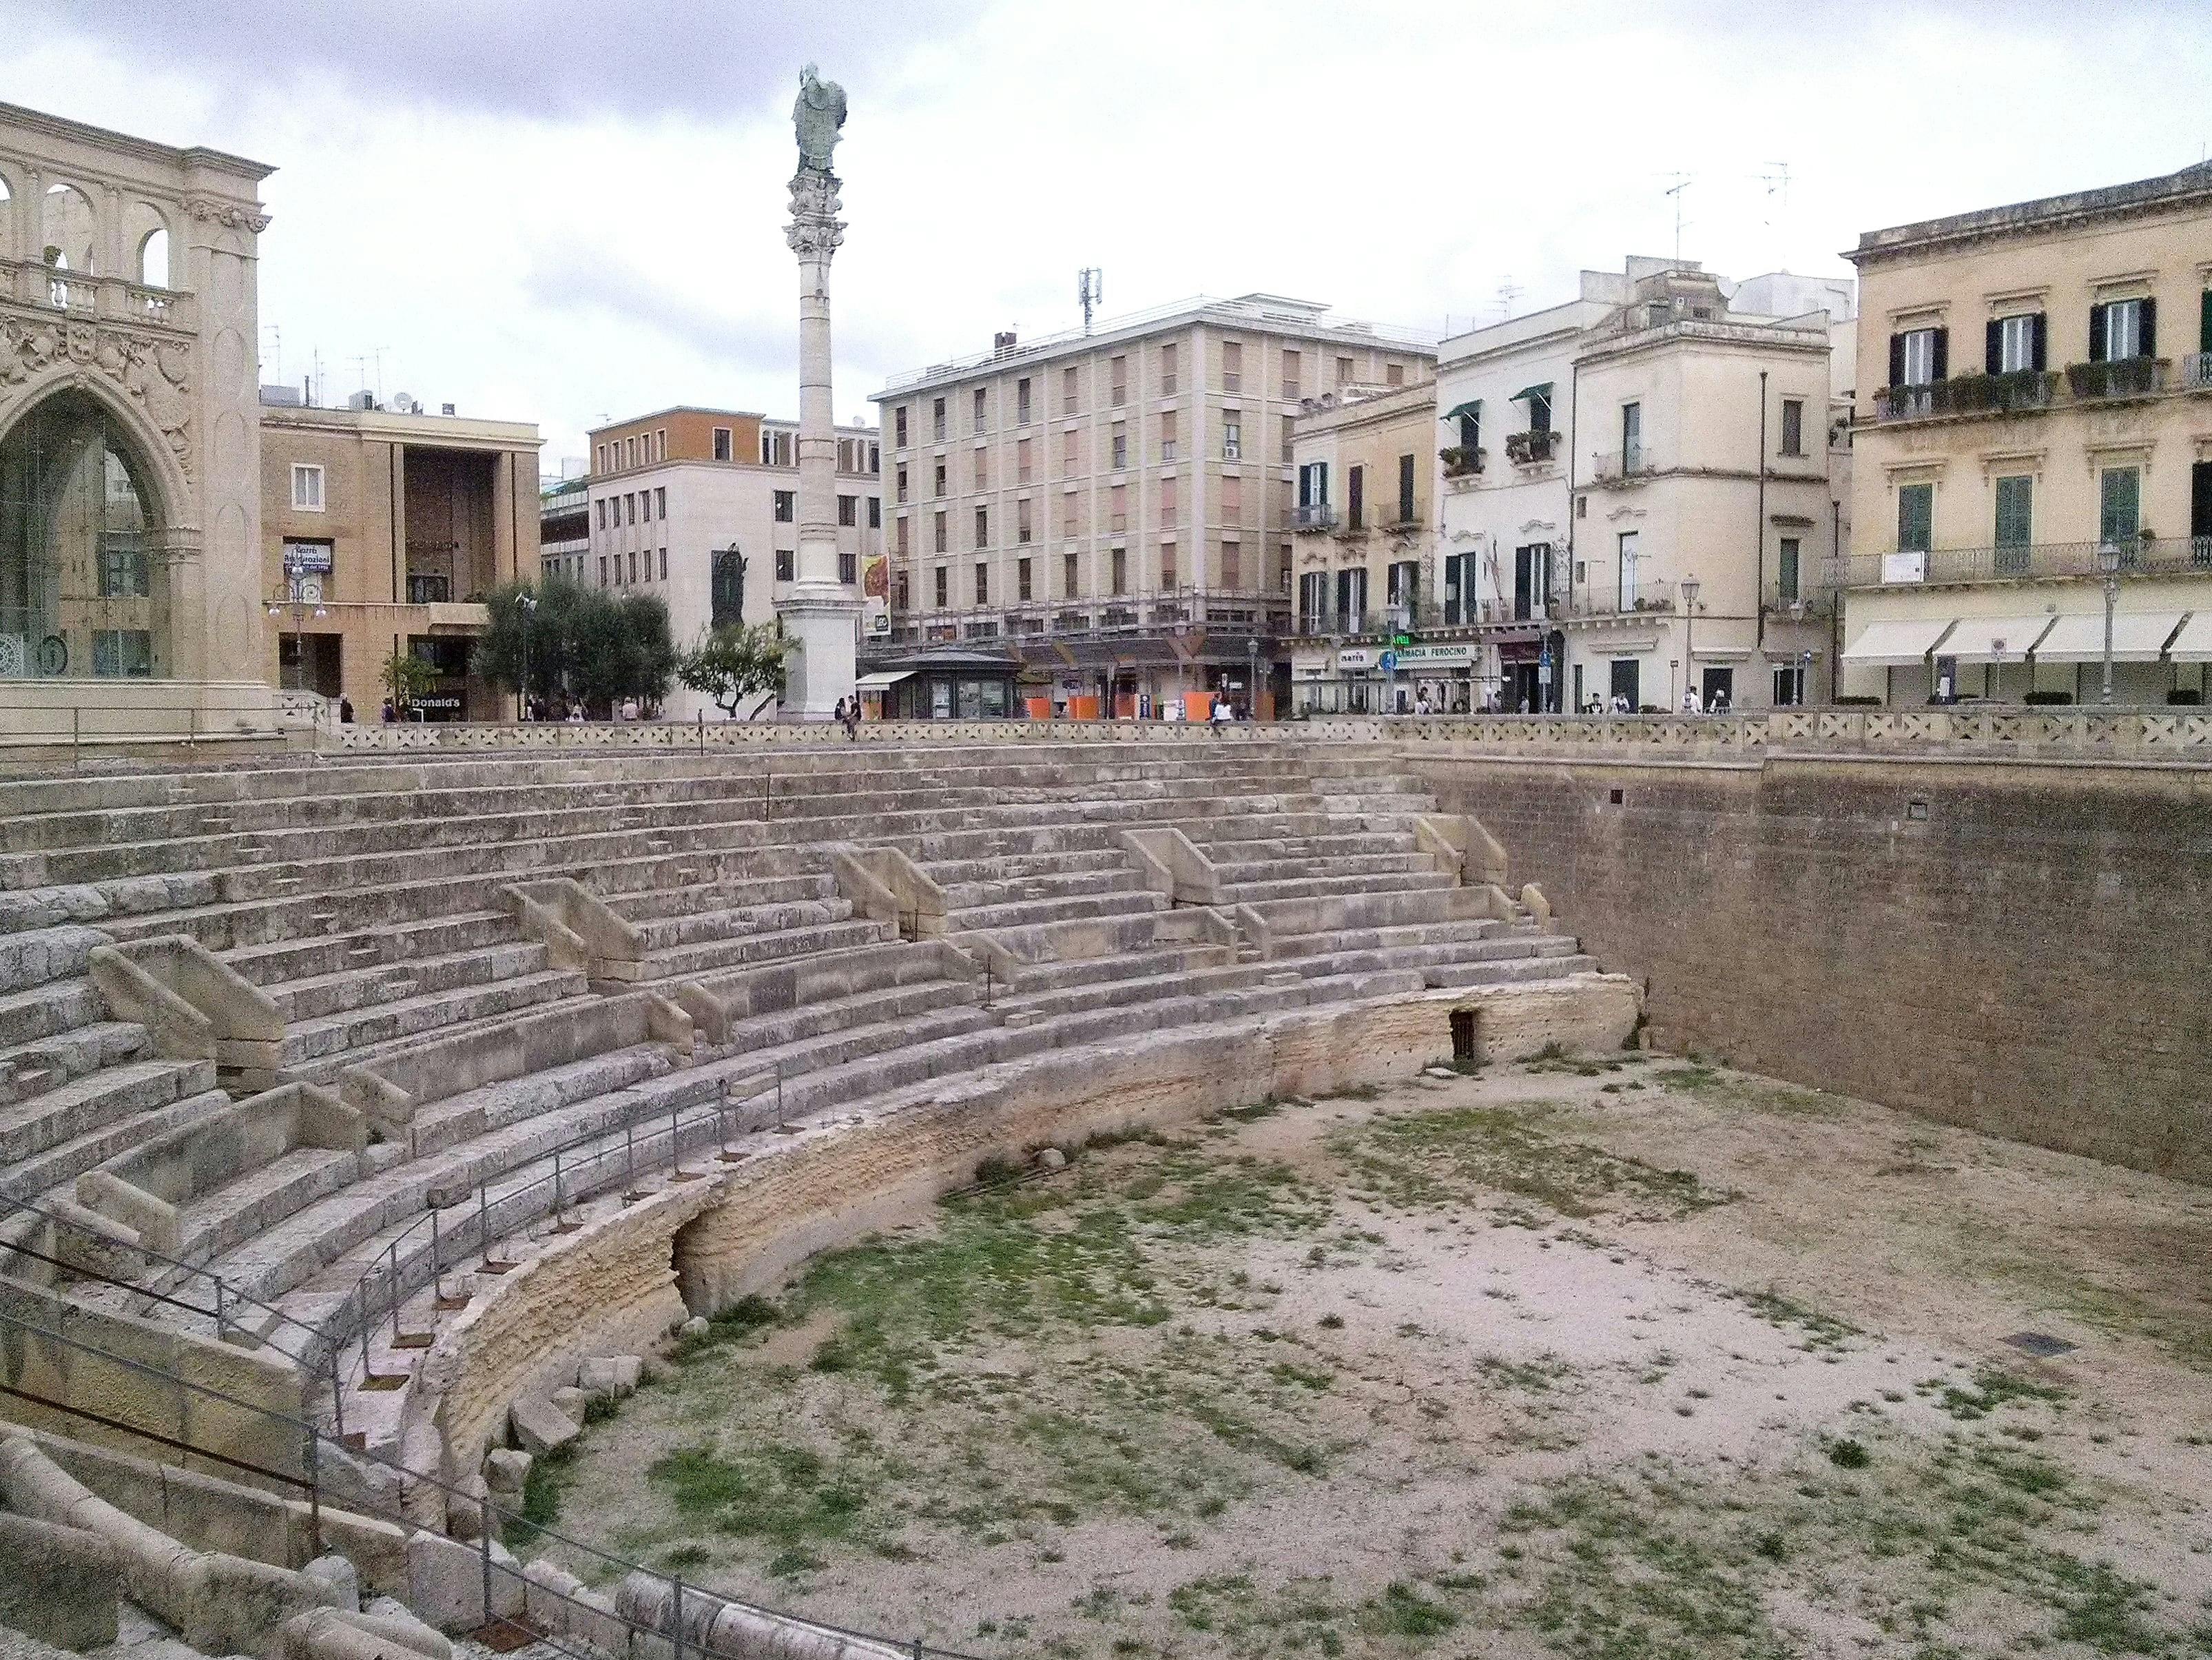 Lecce Half-day Visit from Salento Adriatic Coast